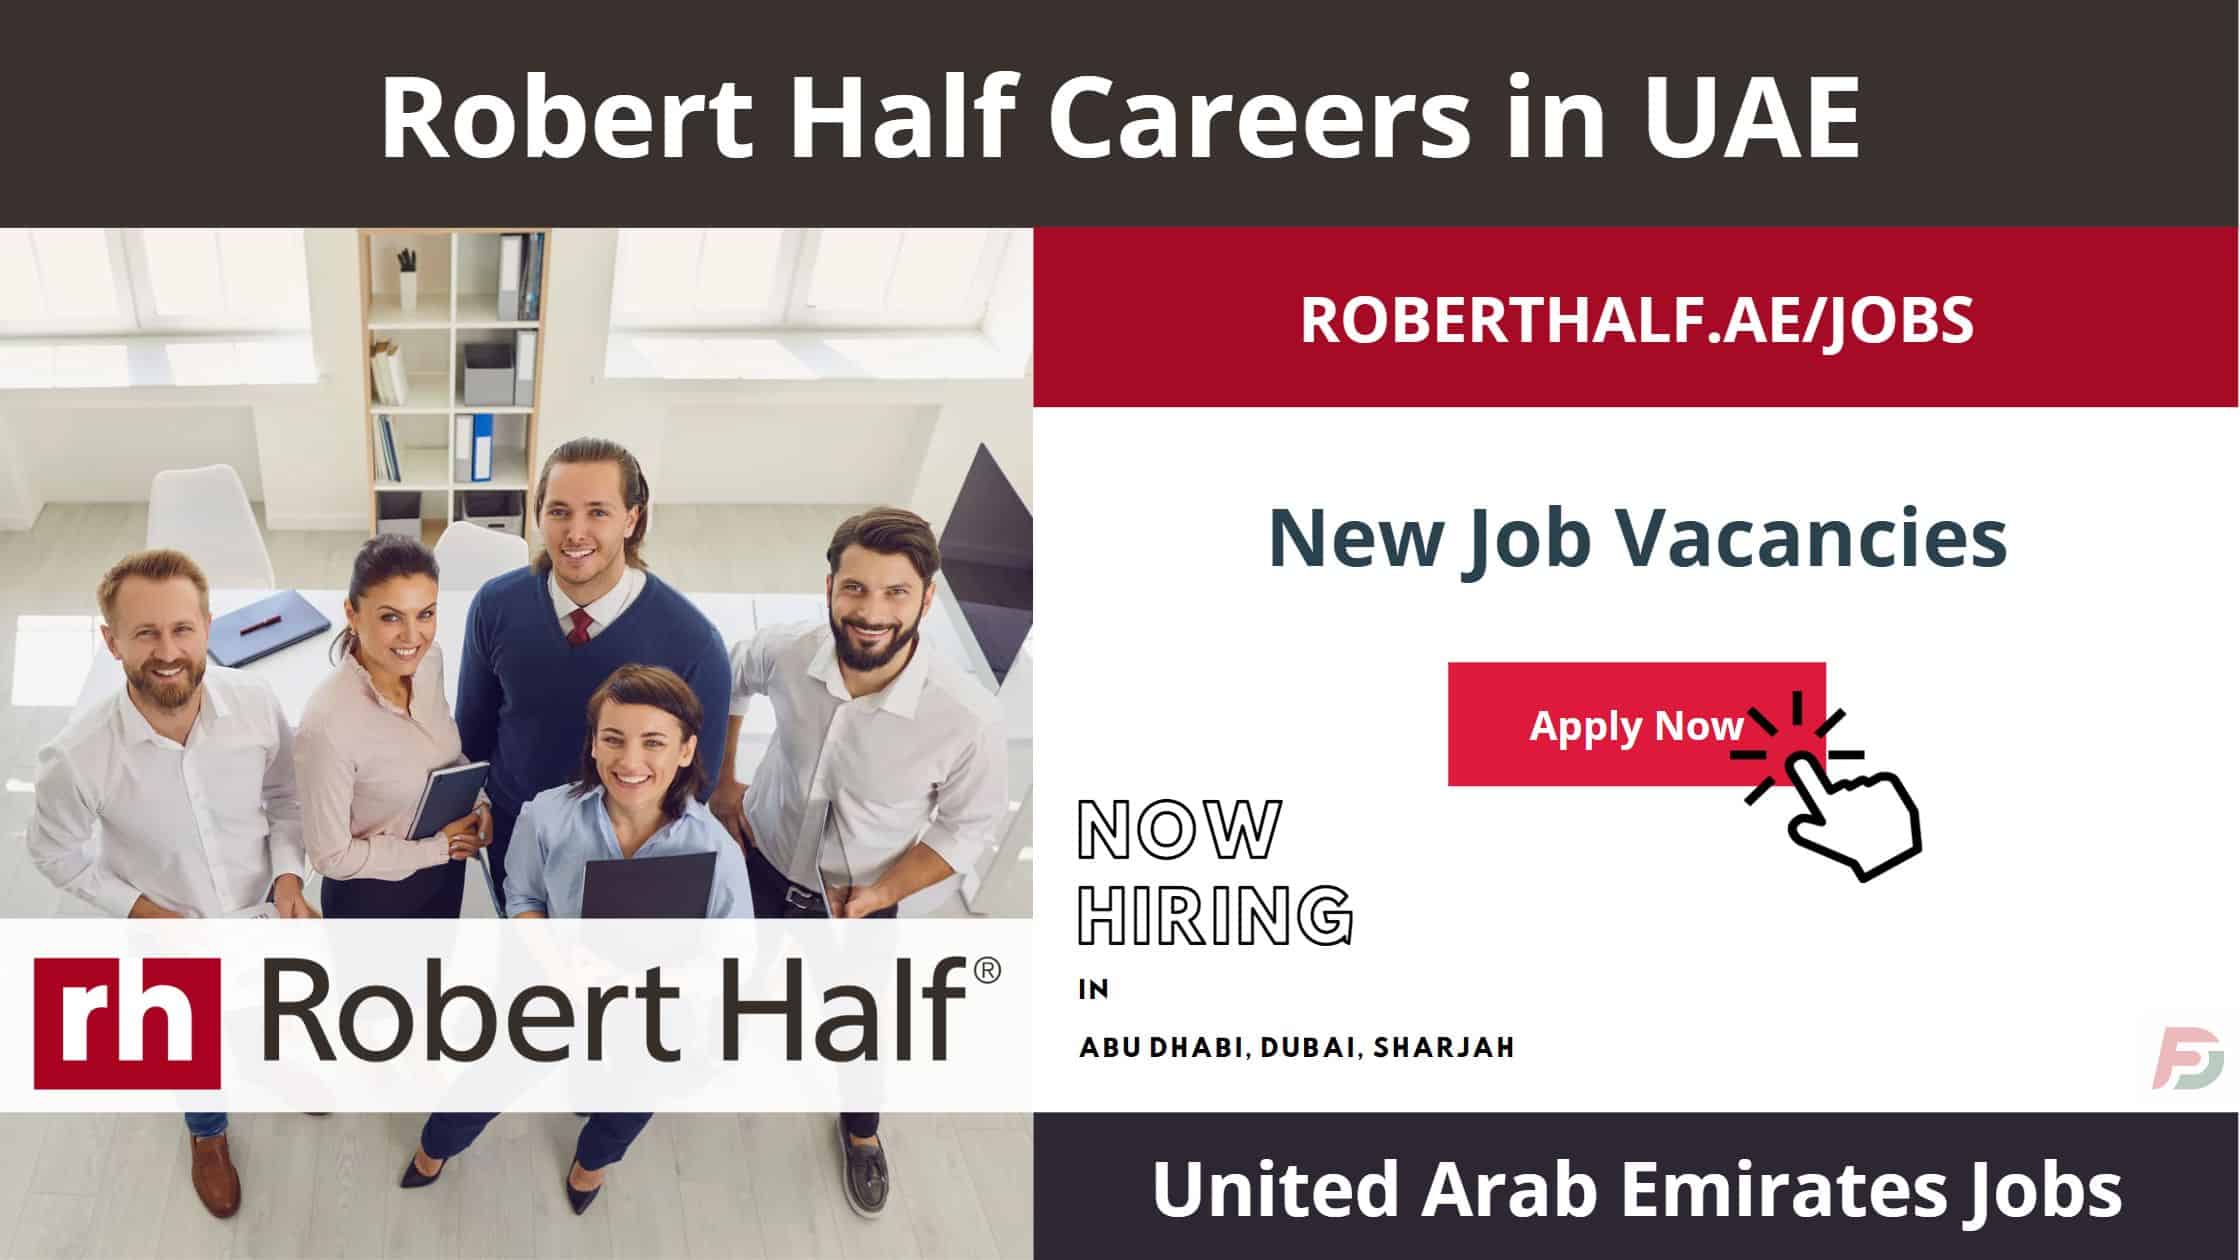 Robert Half Careers in UAE